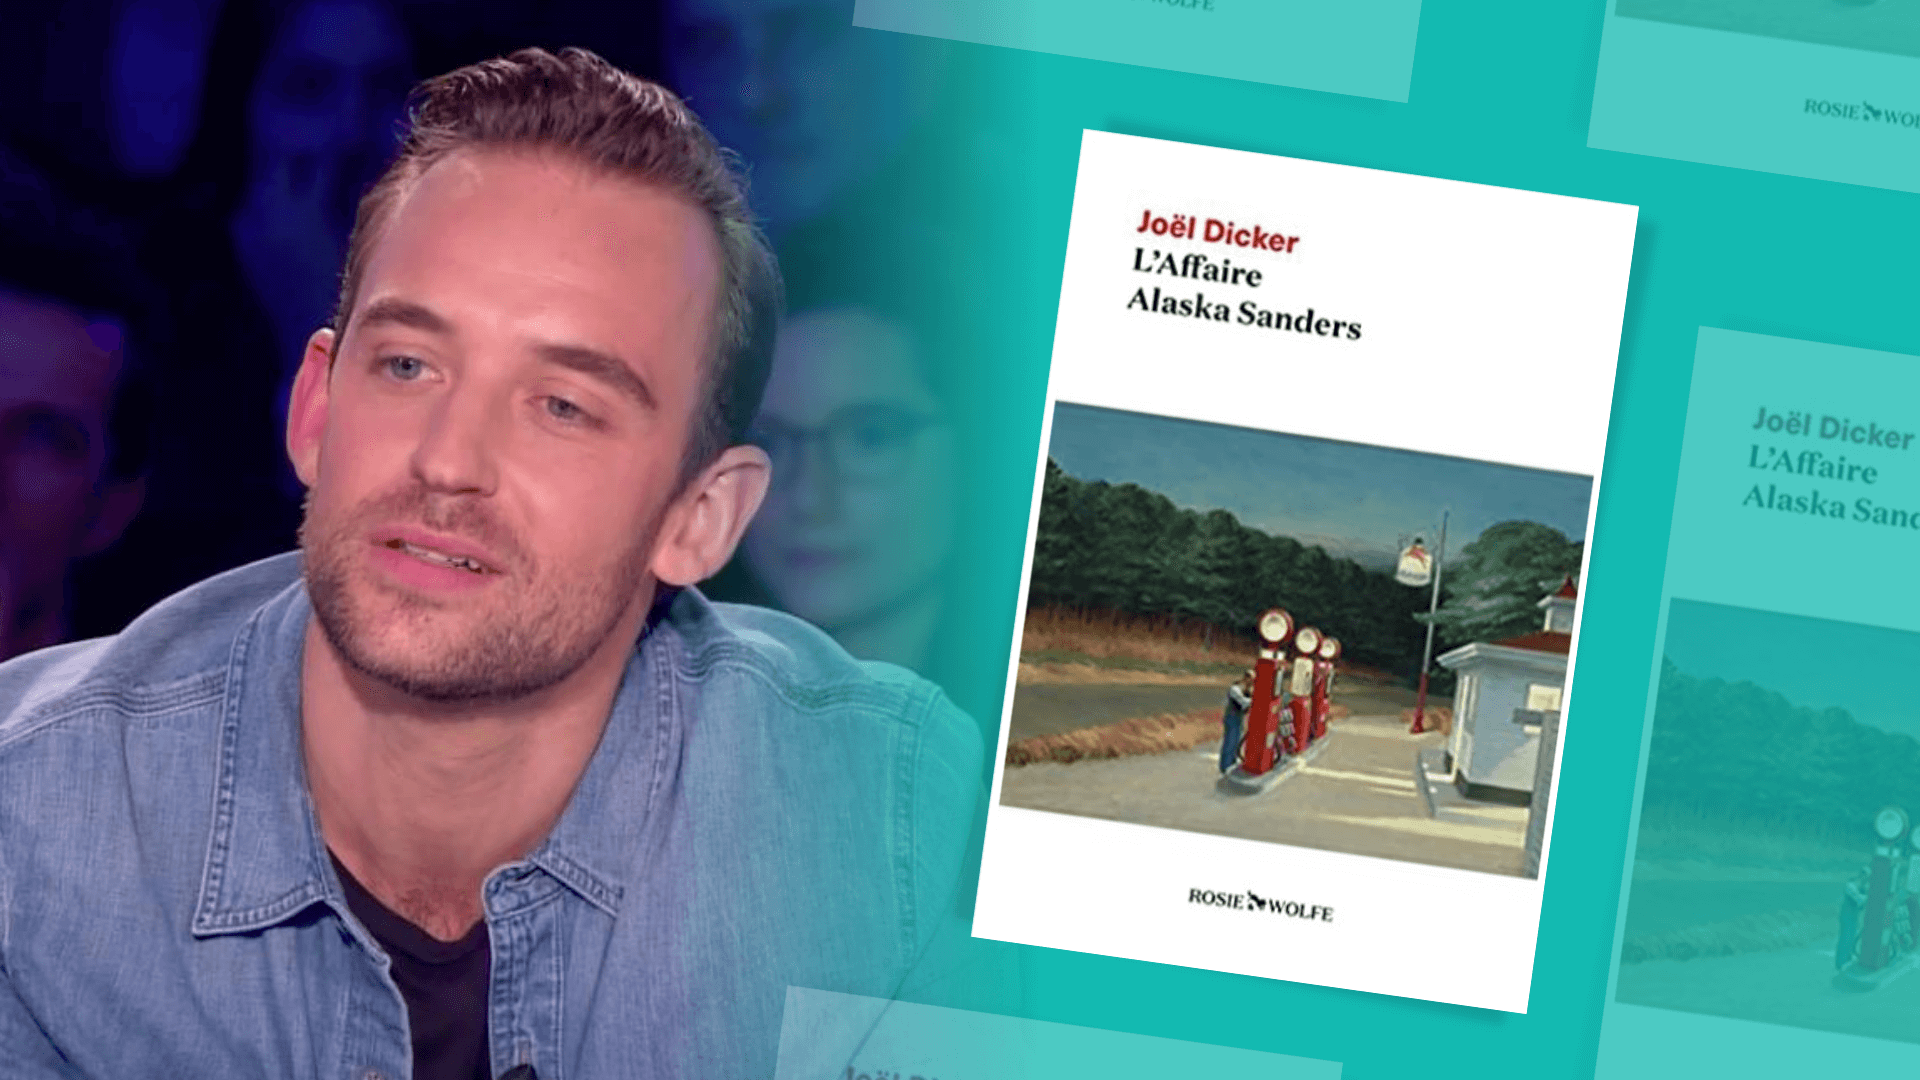 « La littérature, c’est jeune et branché » : l’écrivain Joël Dicker revient sur le succès qui a changé sa vie